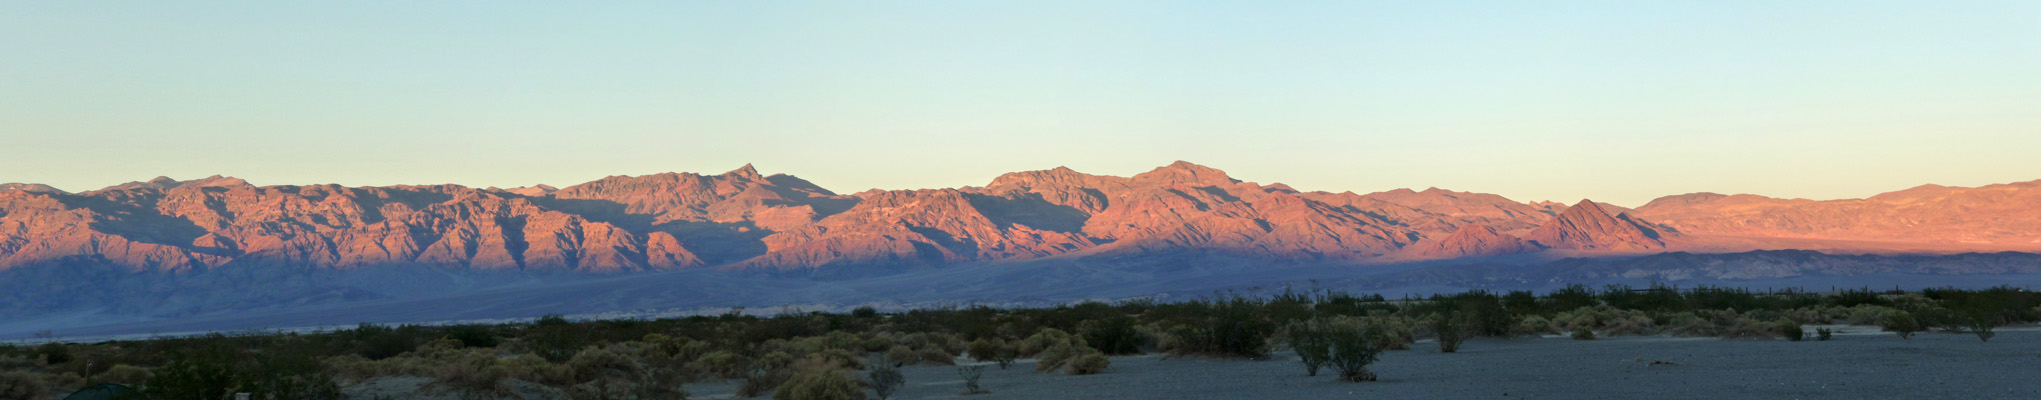 Sunset on the Amargosa Range Death Valley CA